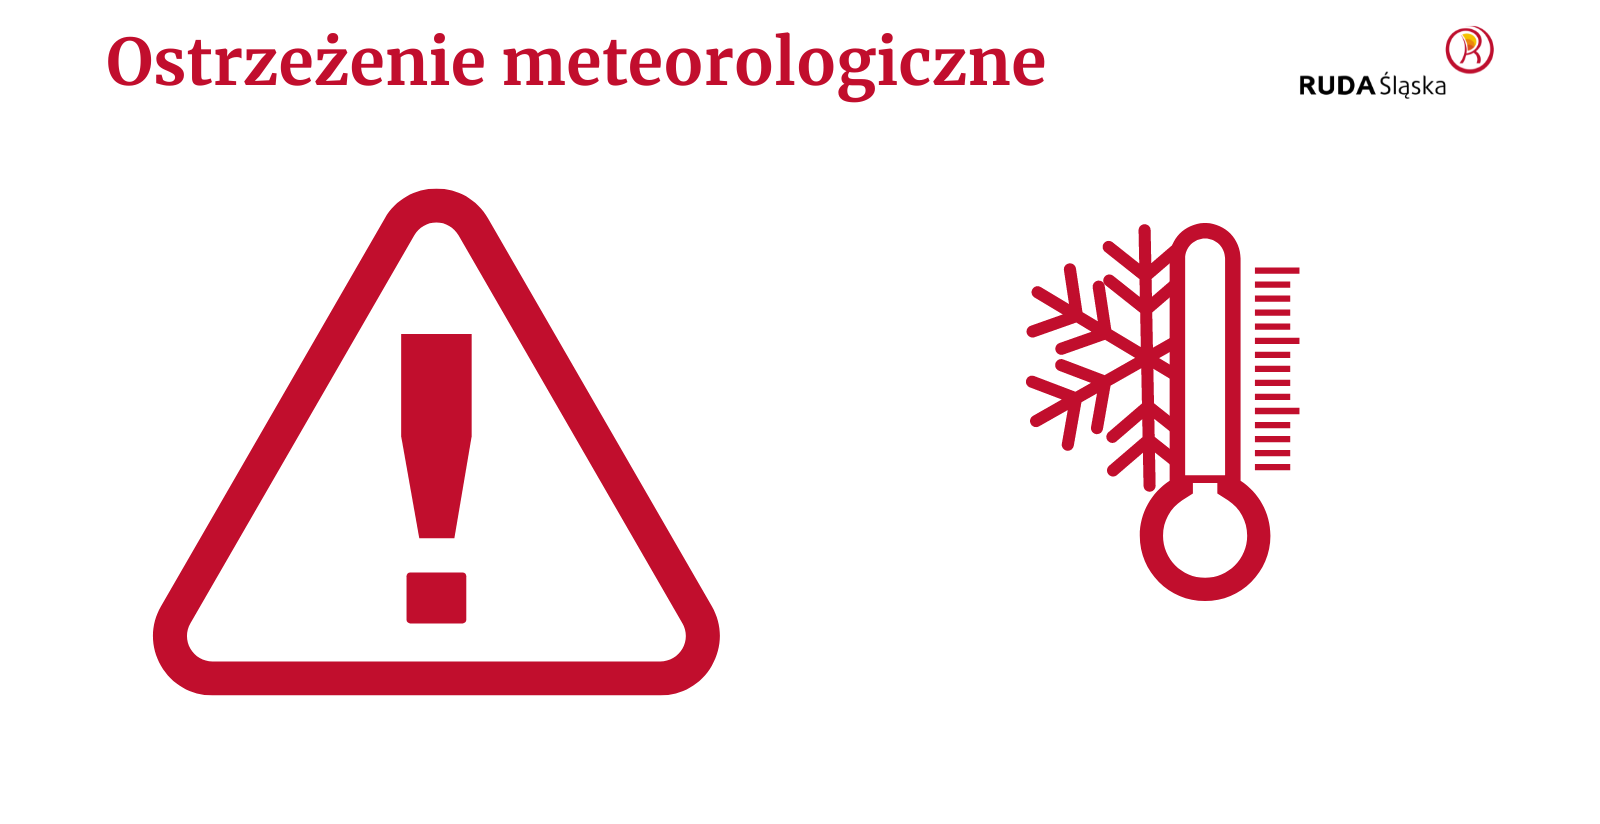 Tekst "ostrzeżenie meteorologiczne", wykrzyknik w trójkącie, symbol termometru i płatka śniegu, logo Rudy Śląskiej.